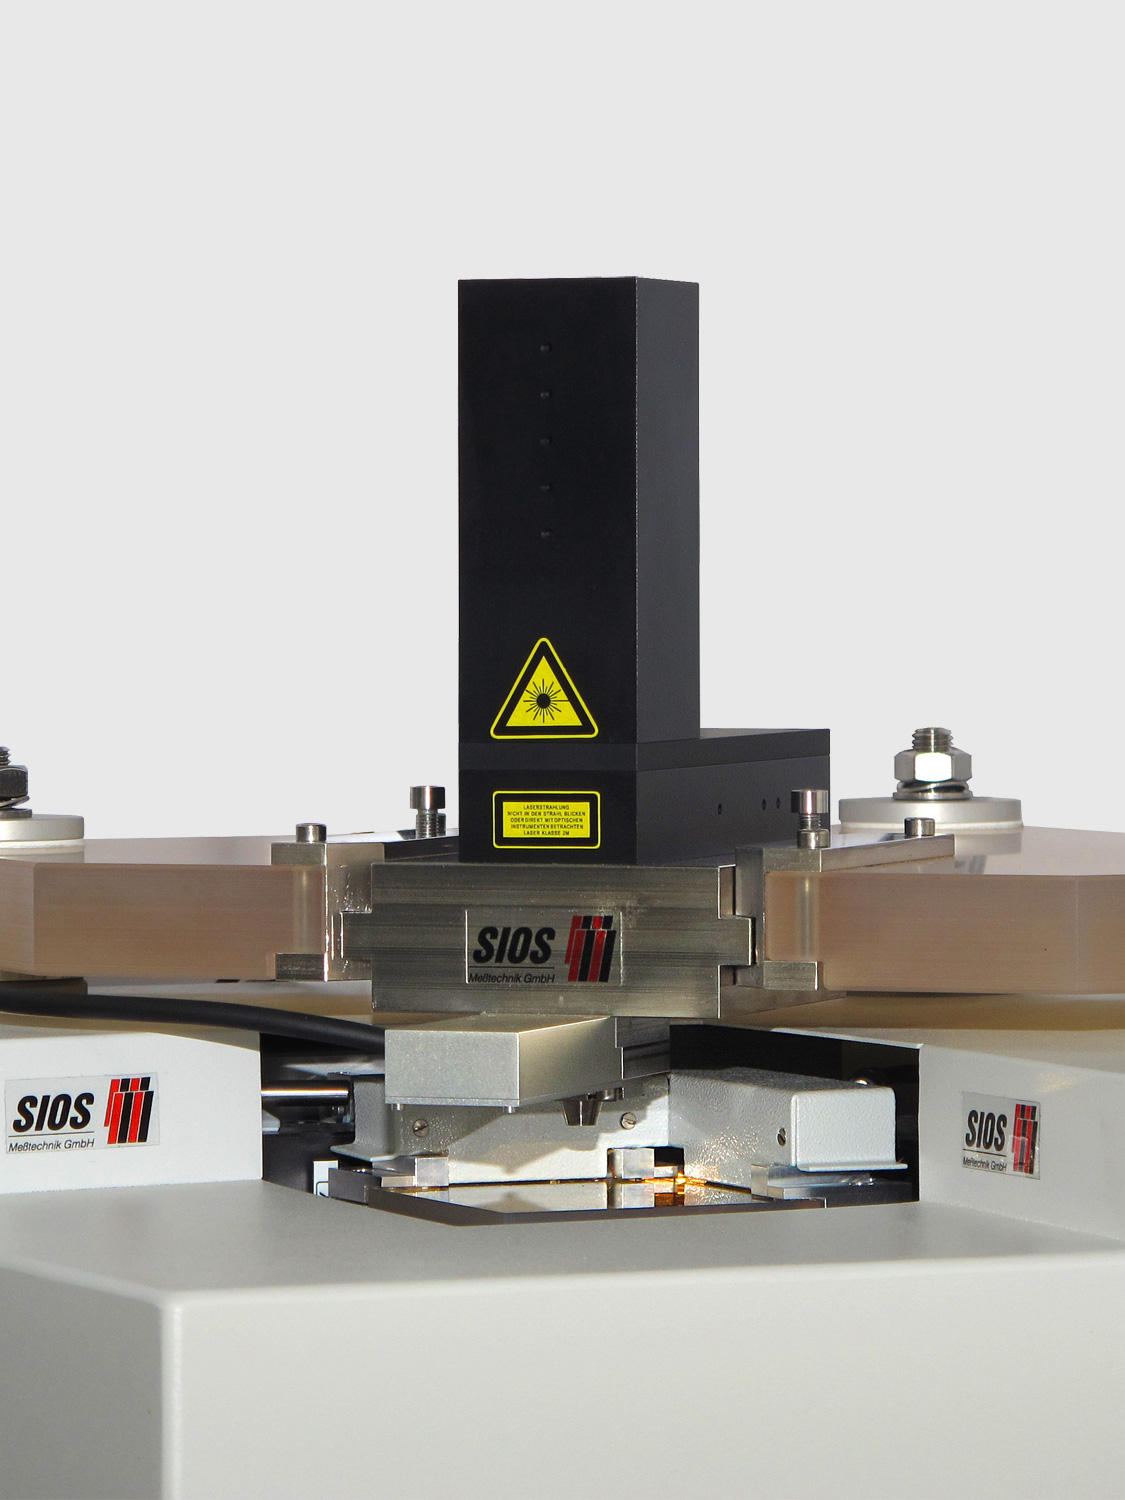 Laserfokussensor für die Nanopositionier- und Nanomessmaschine